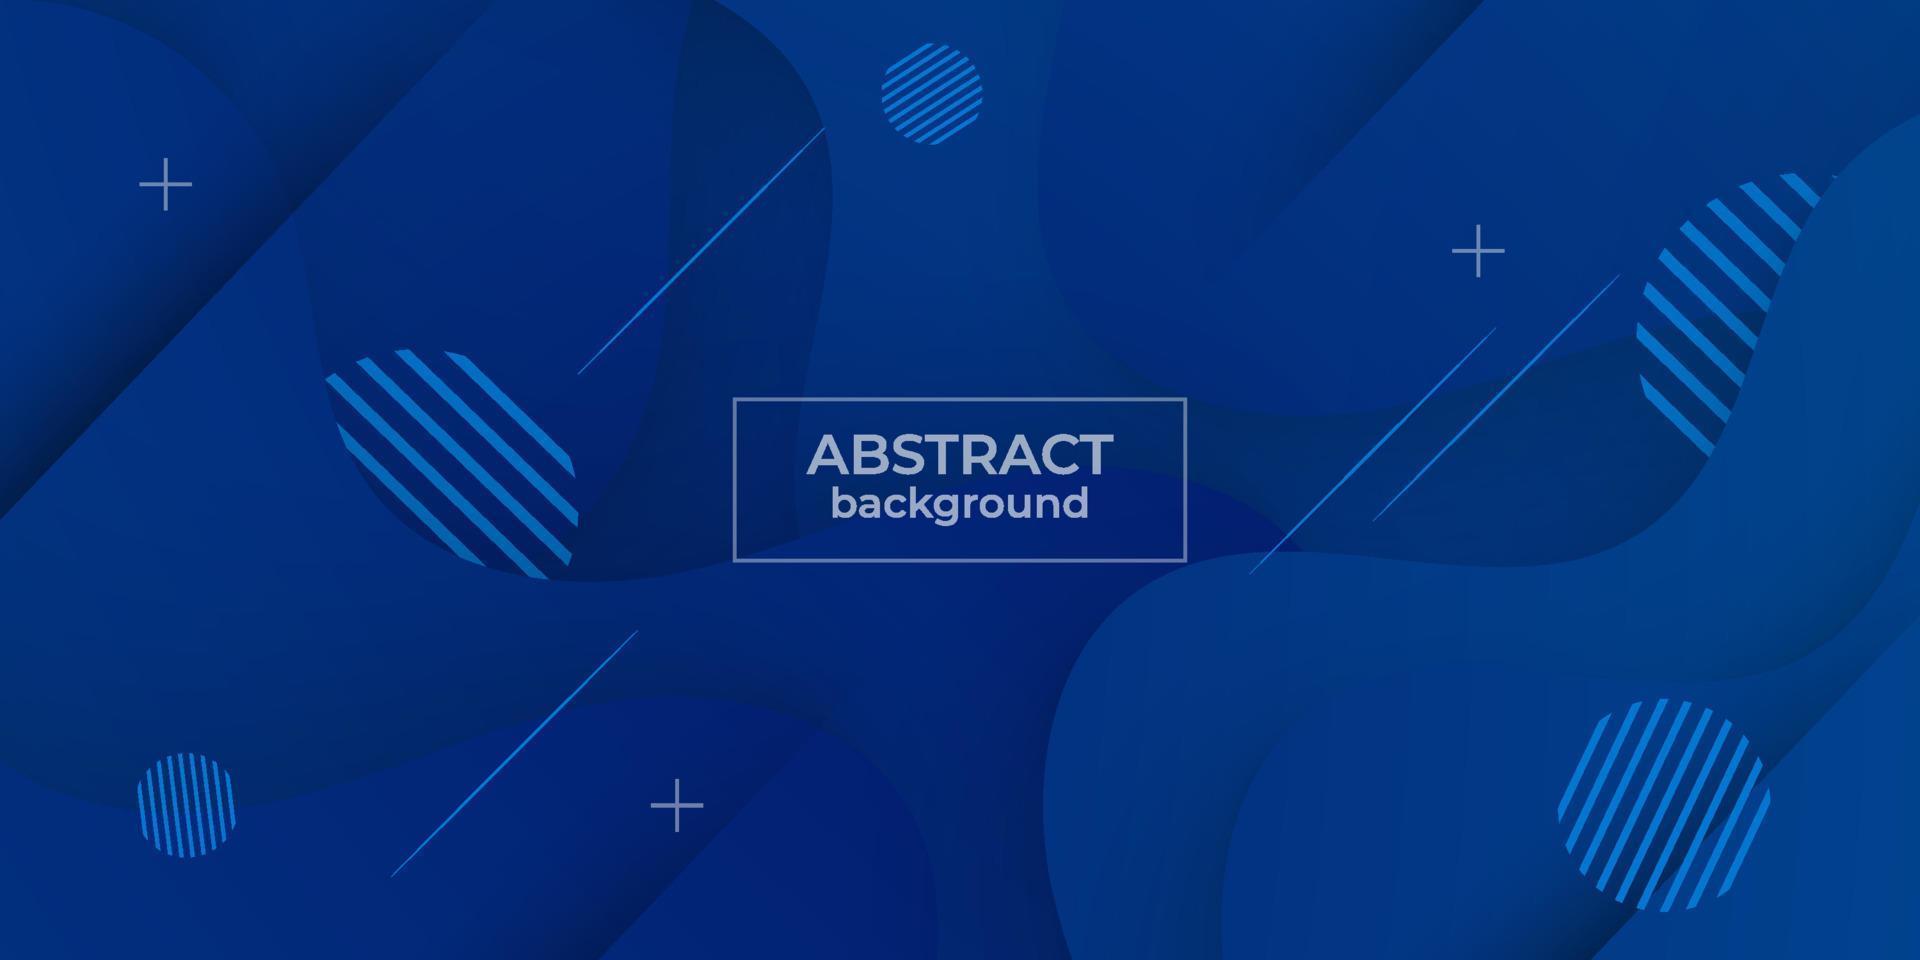 geometría de fondo abstracto azul elegante y moderno para banner, portada, volante, folleto, diseño de afiches, presentación de negocios y sitio web. eps10 vector